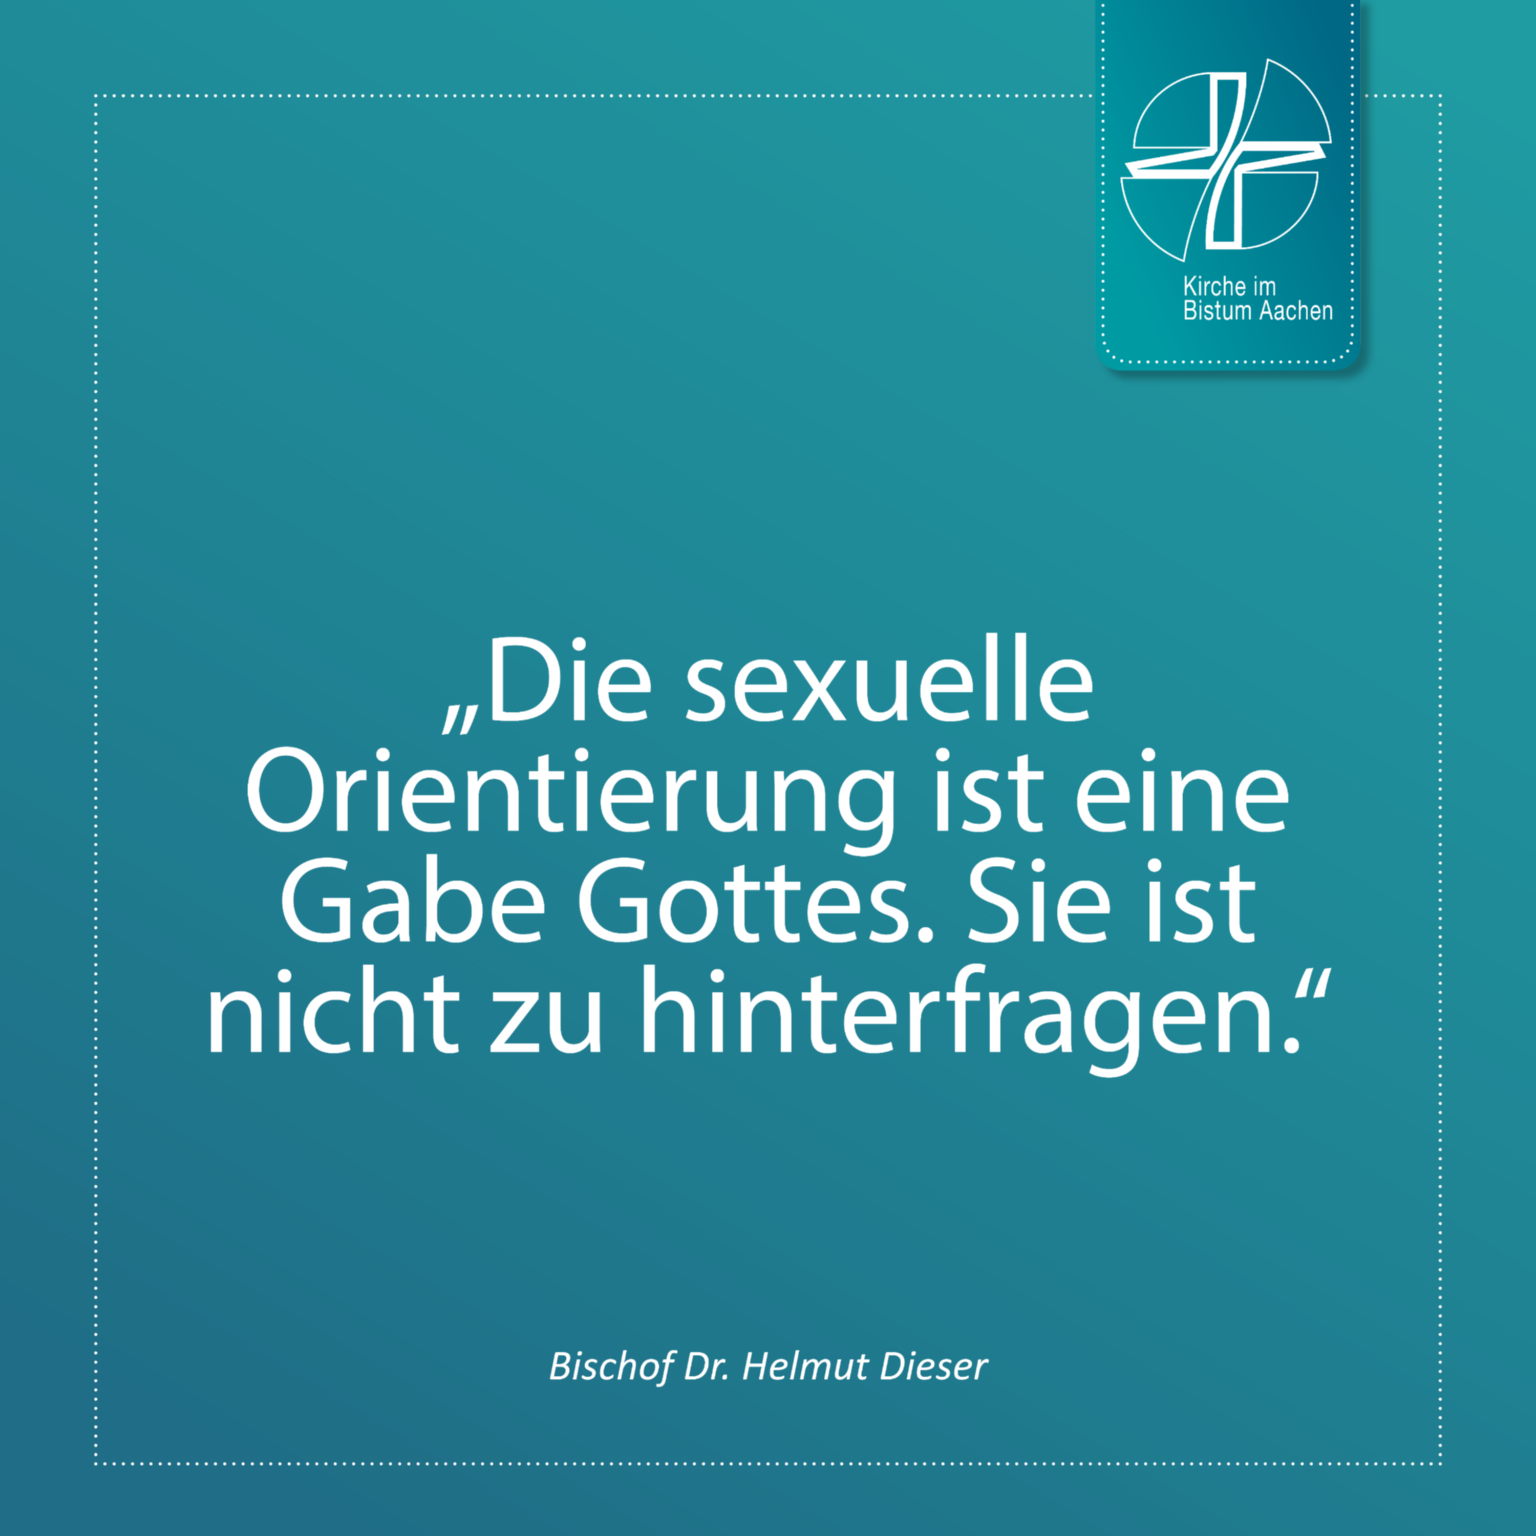 Bischof Dr. Helmut Dieser - Zitat 9 (c) Bistum Aachen